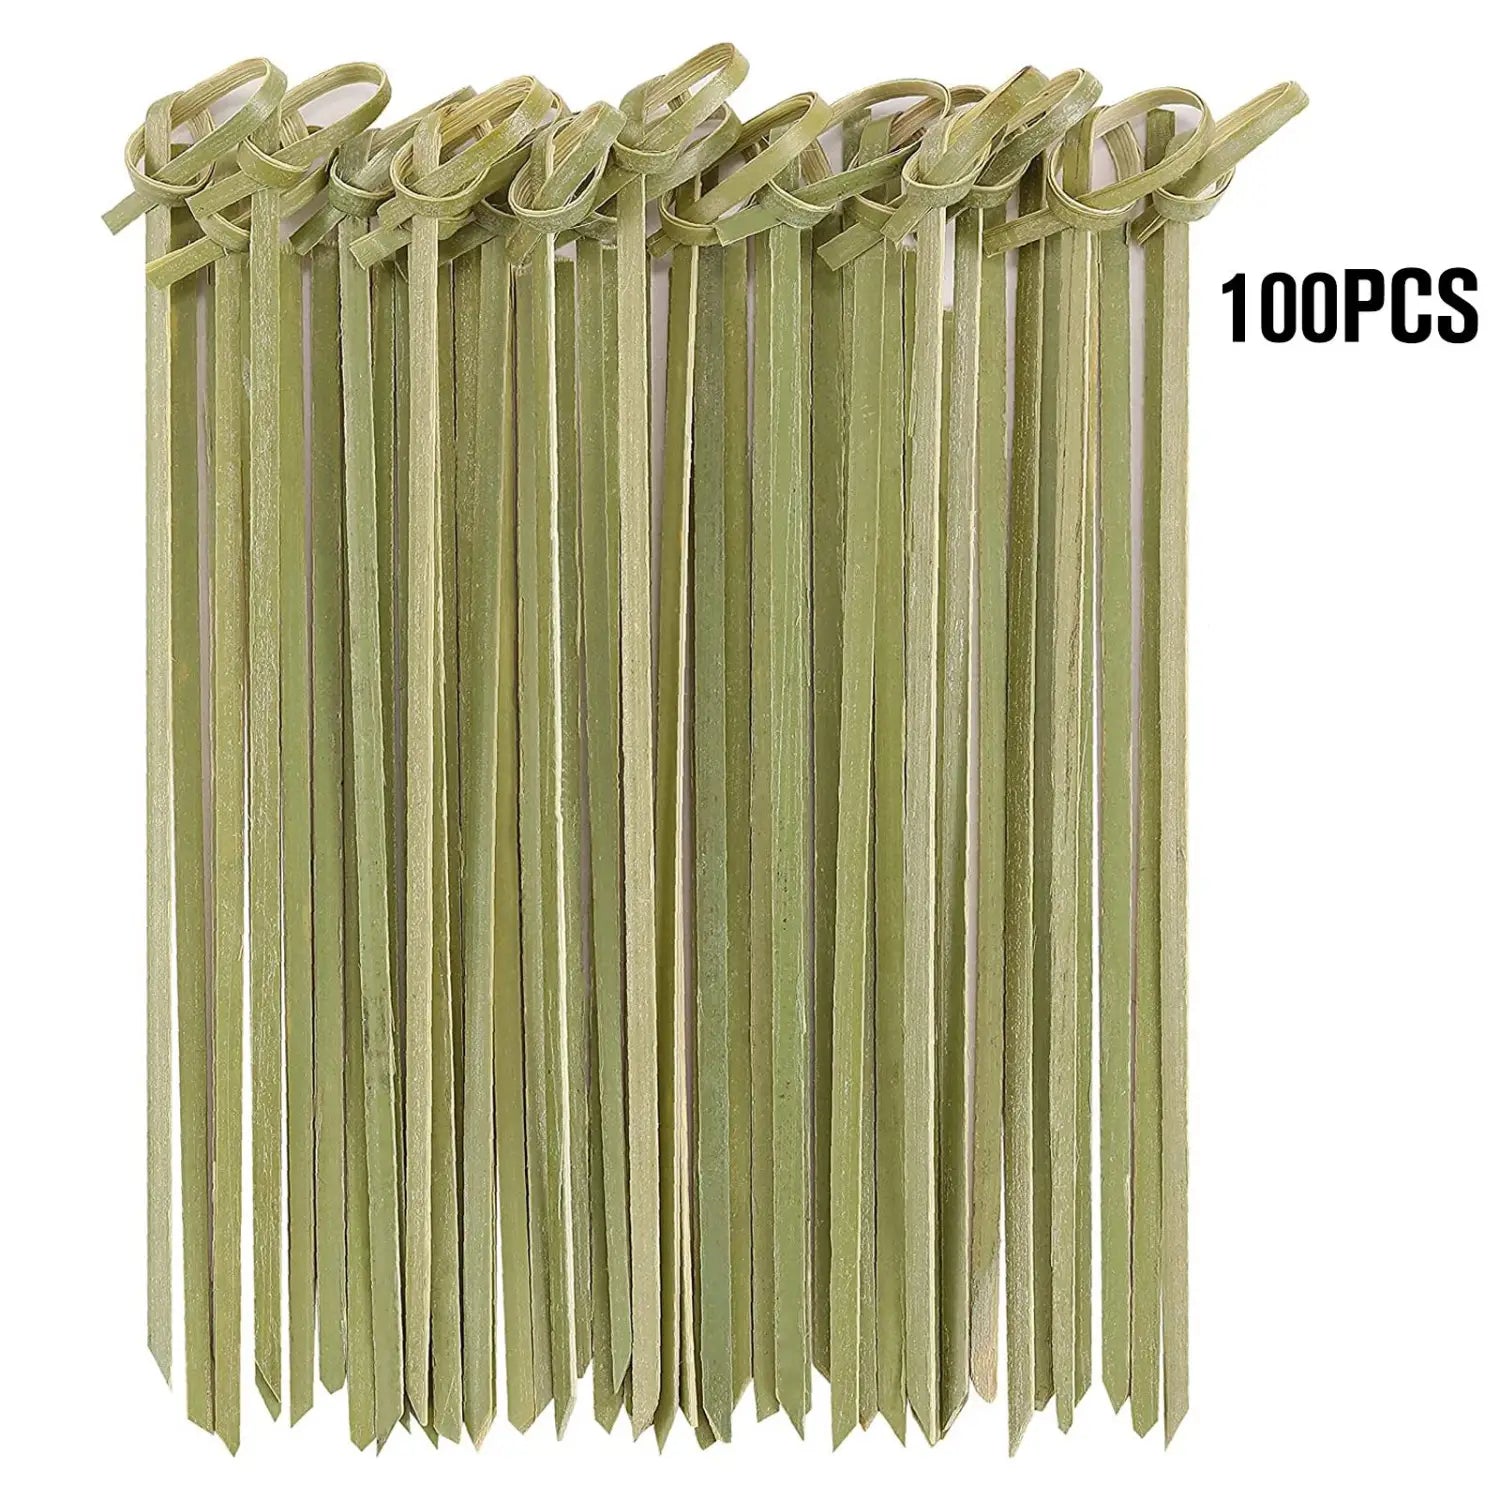 Krawattennadeln aus Bambus